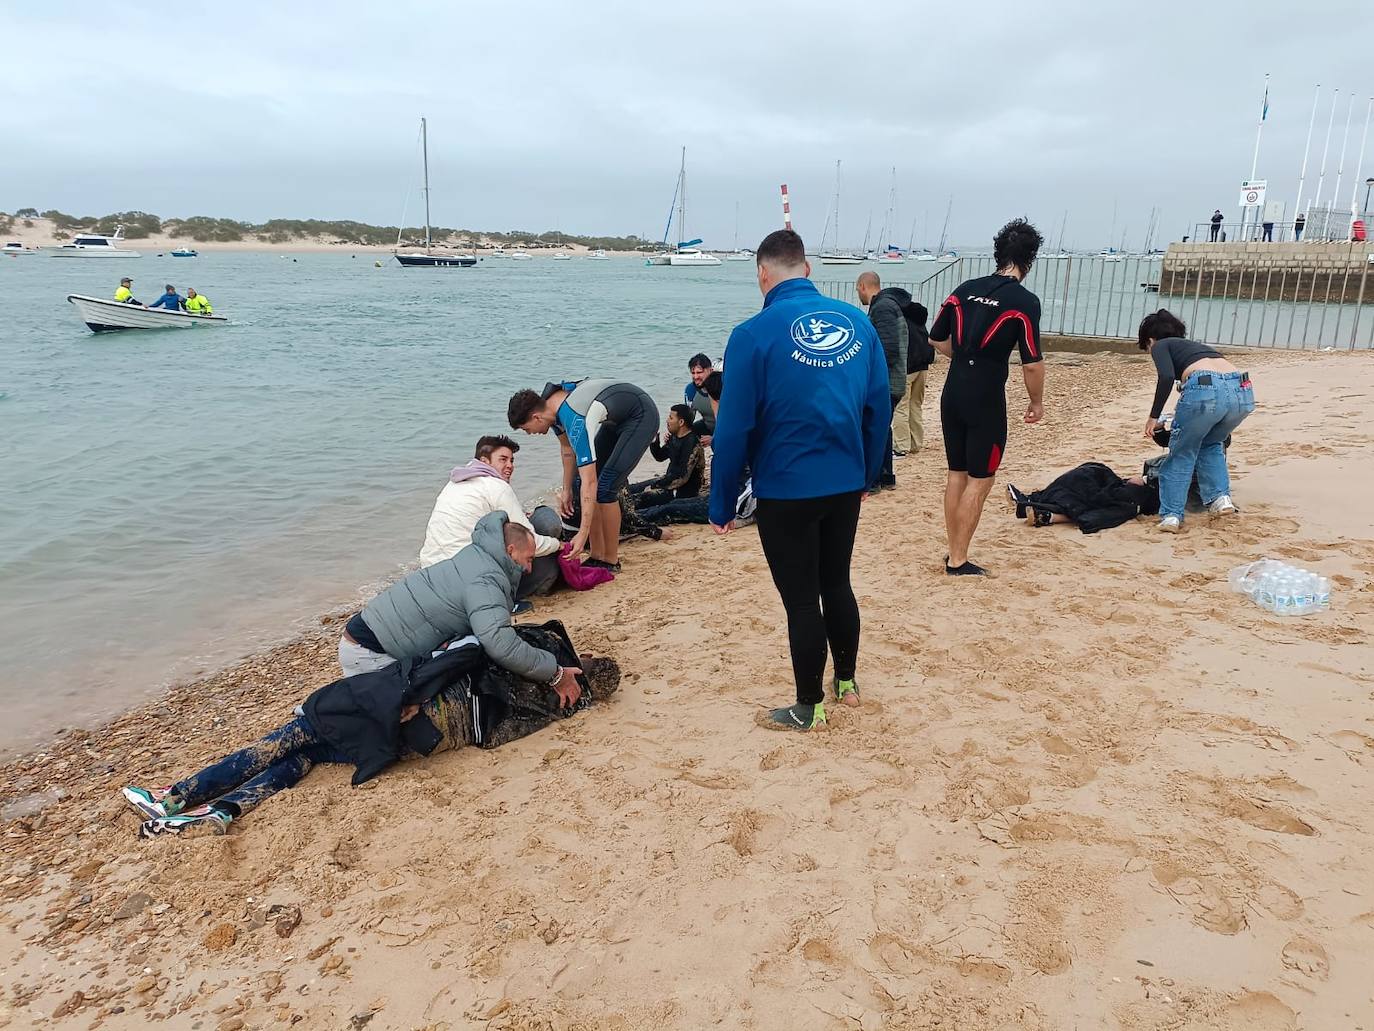 Fotos: Inmigrantes atendidos en la orilla de Sancti Petri